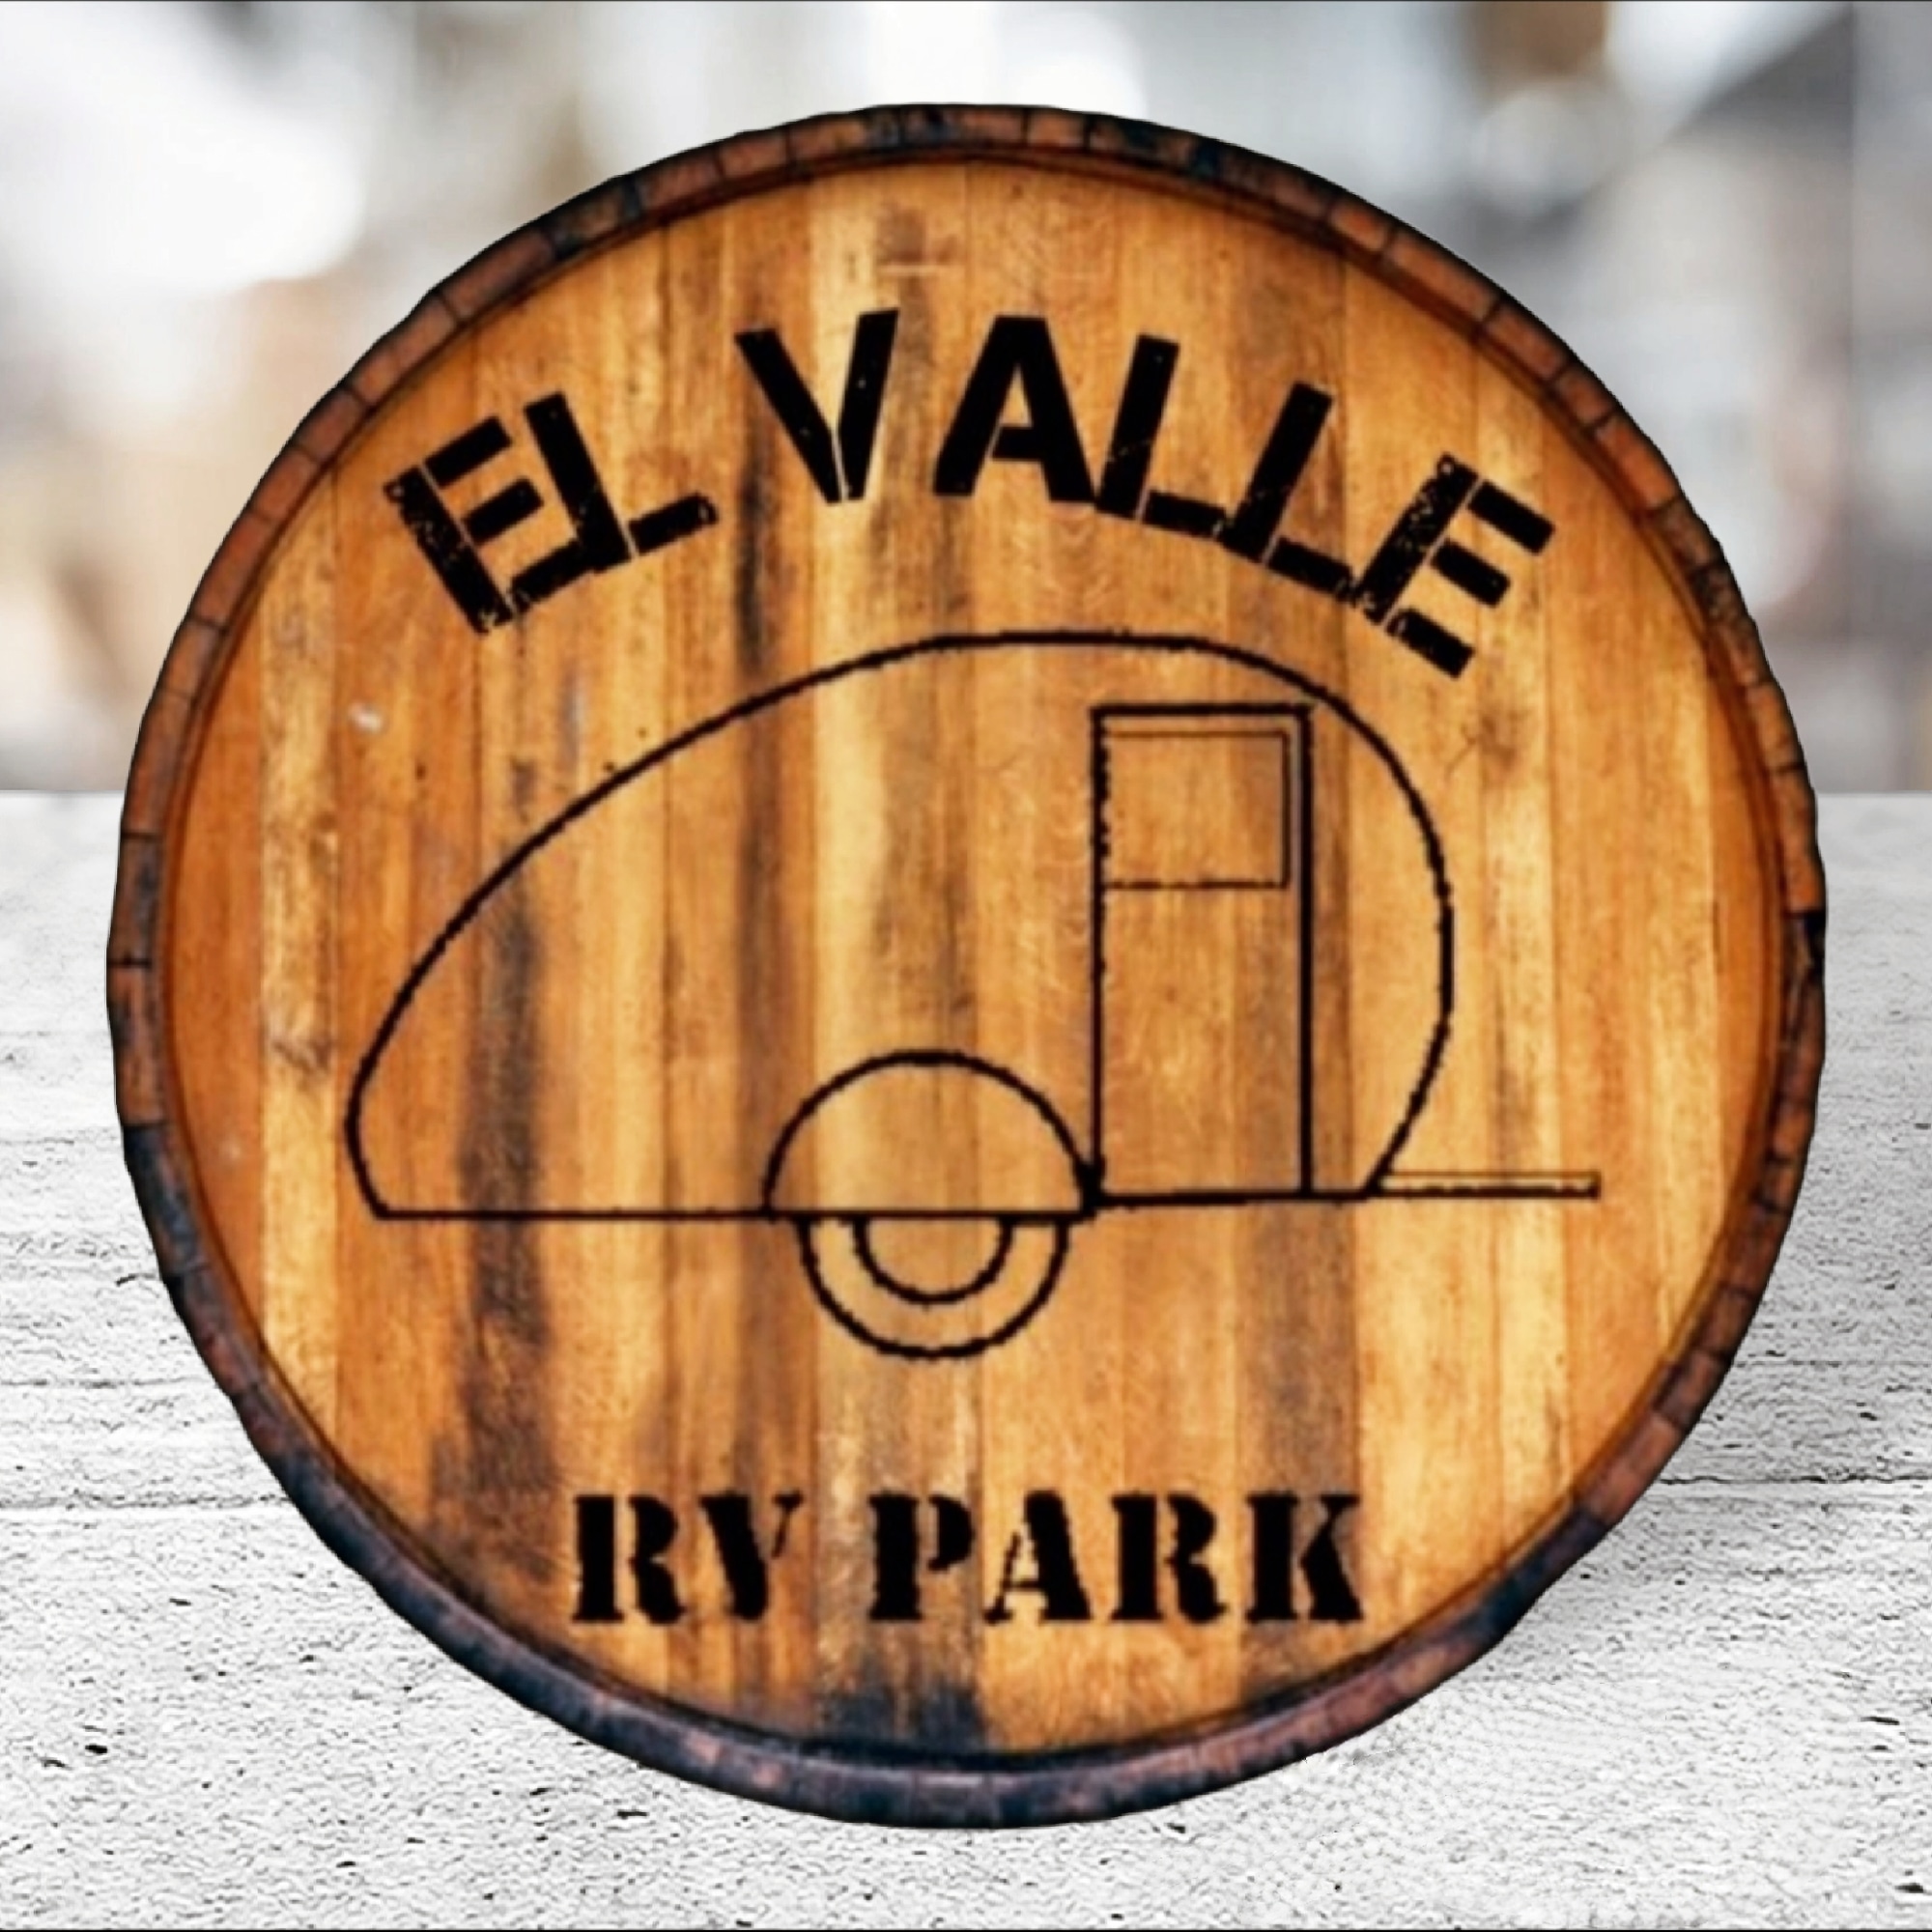 El Valle RV Park